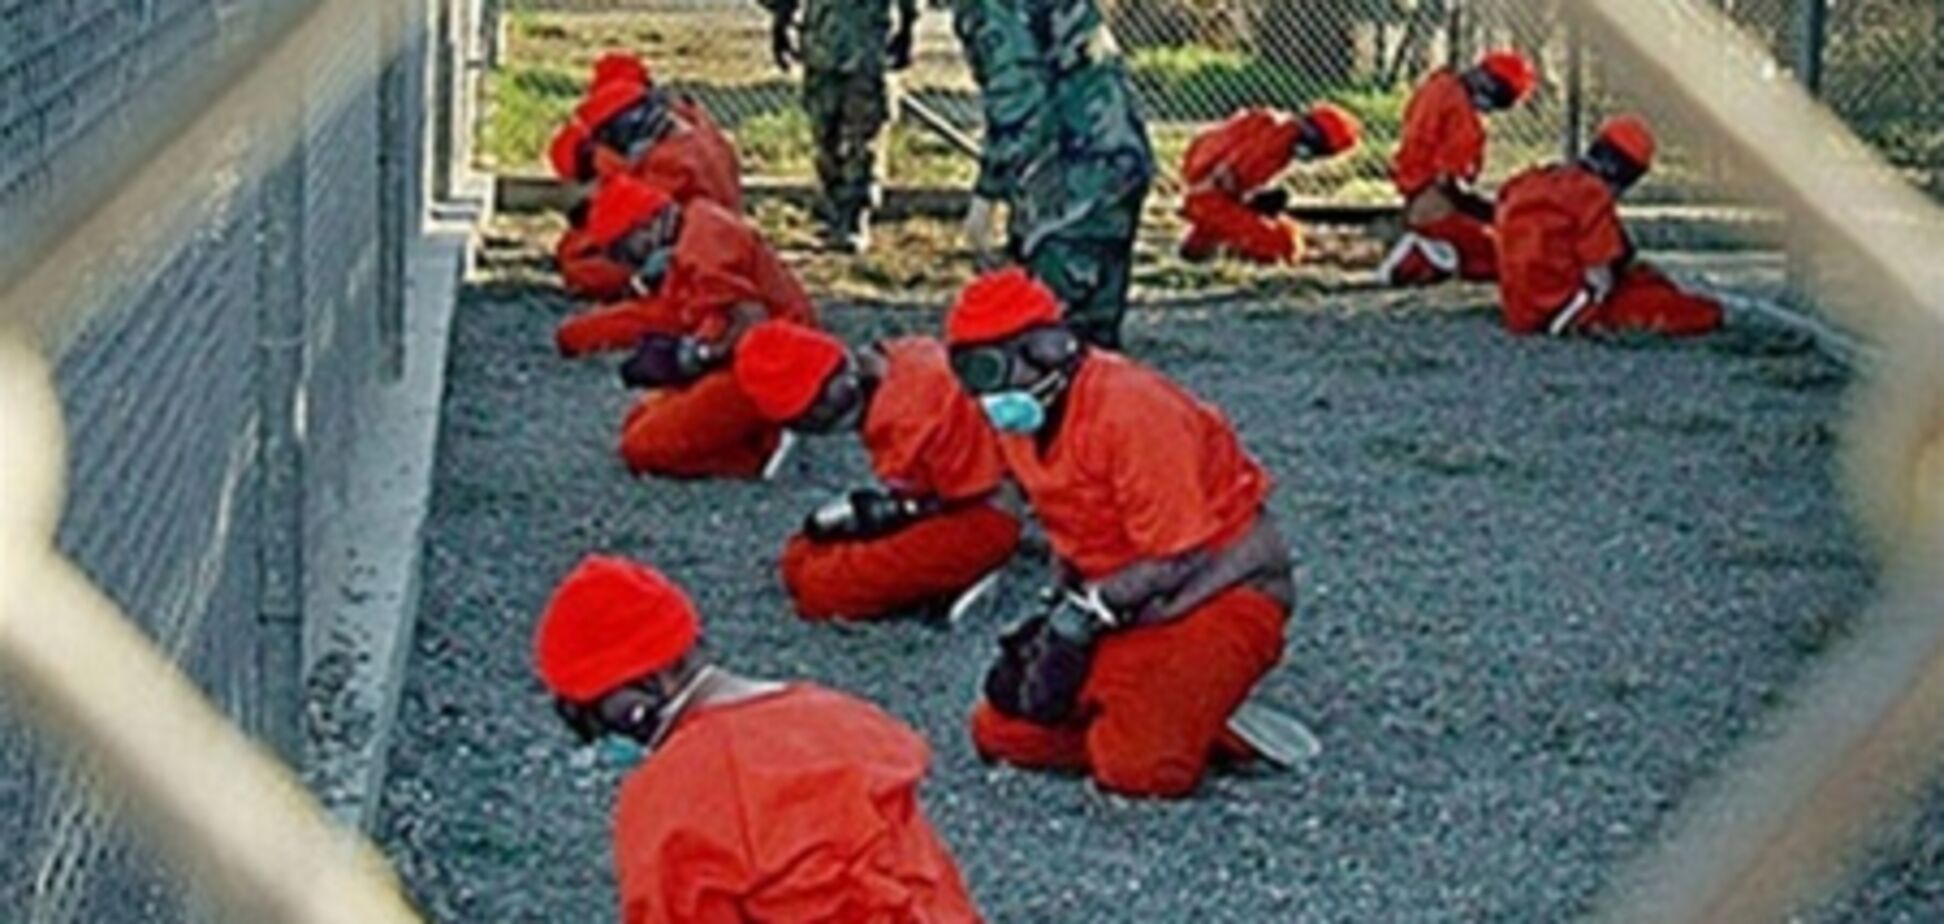 Більше сотні ув'язнених Гуантанамо продовжують голодування